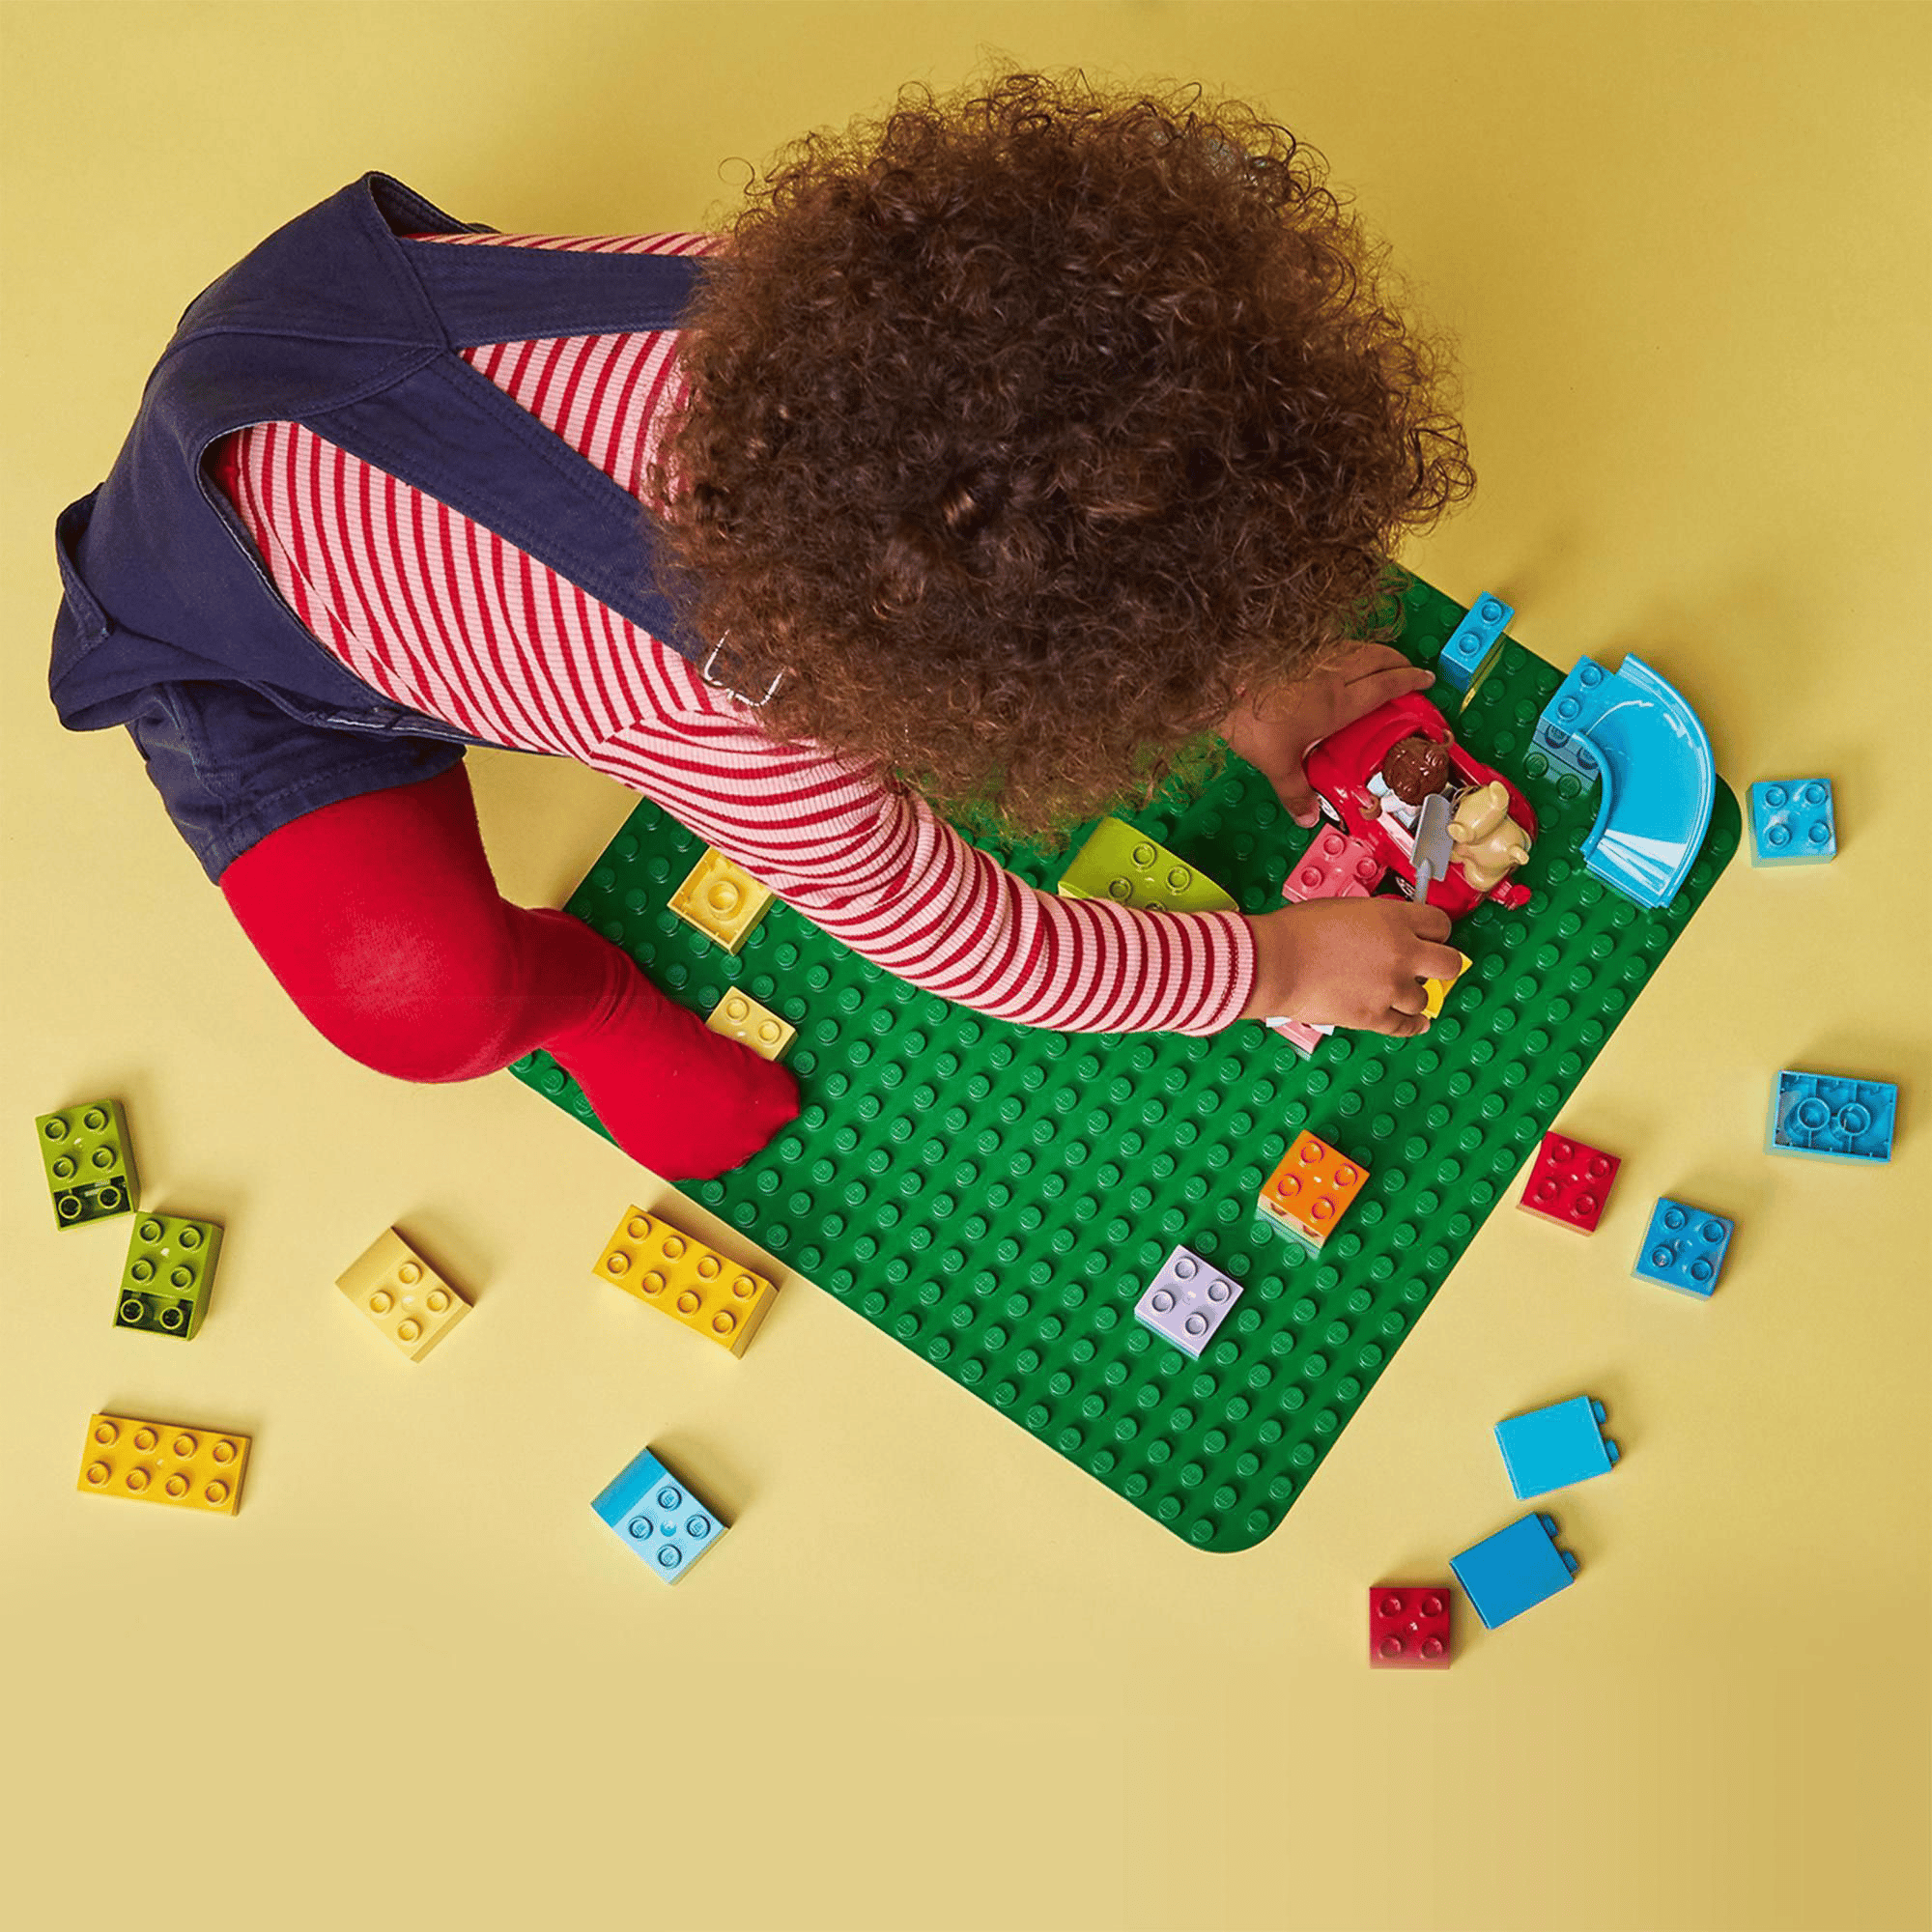 10980 Bauplatte LEGO duplo Grün 2000582873502 2